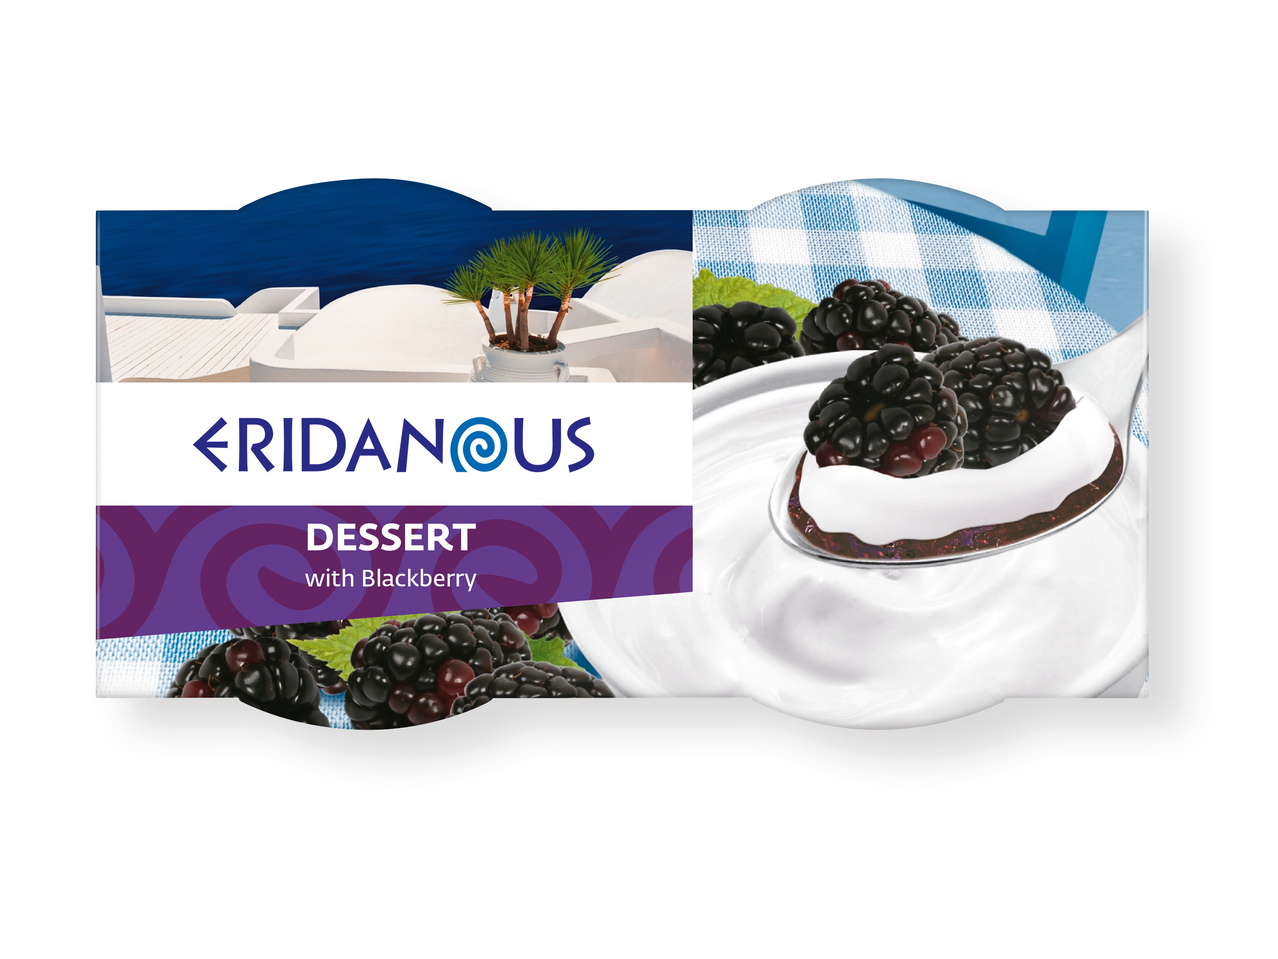 'Eridanous(R)' Yogur griego con frutas